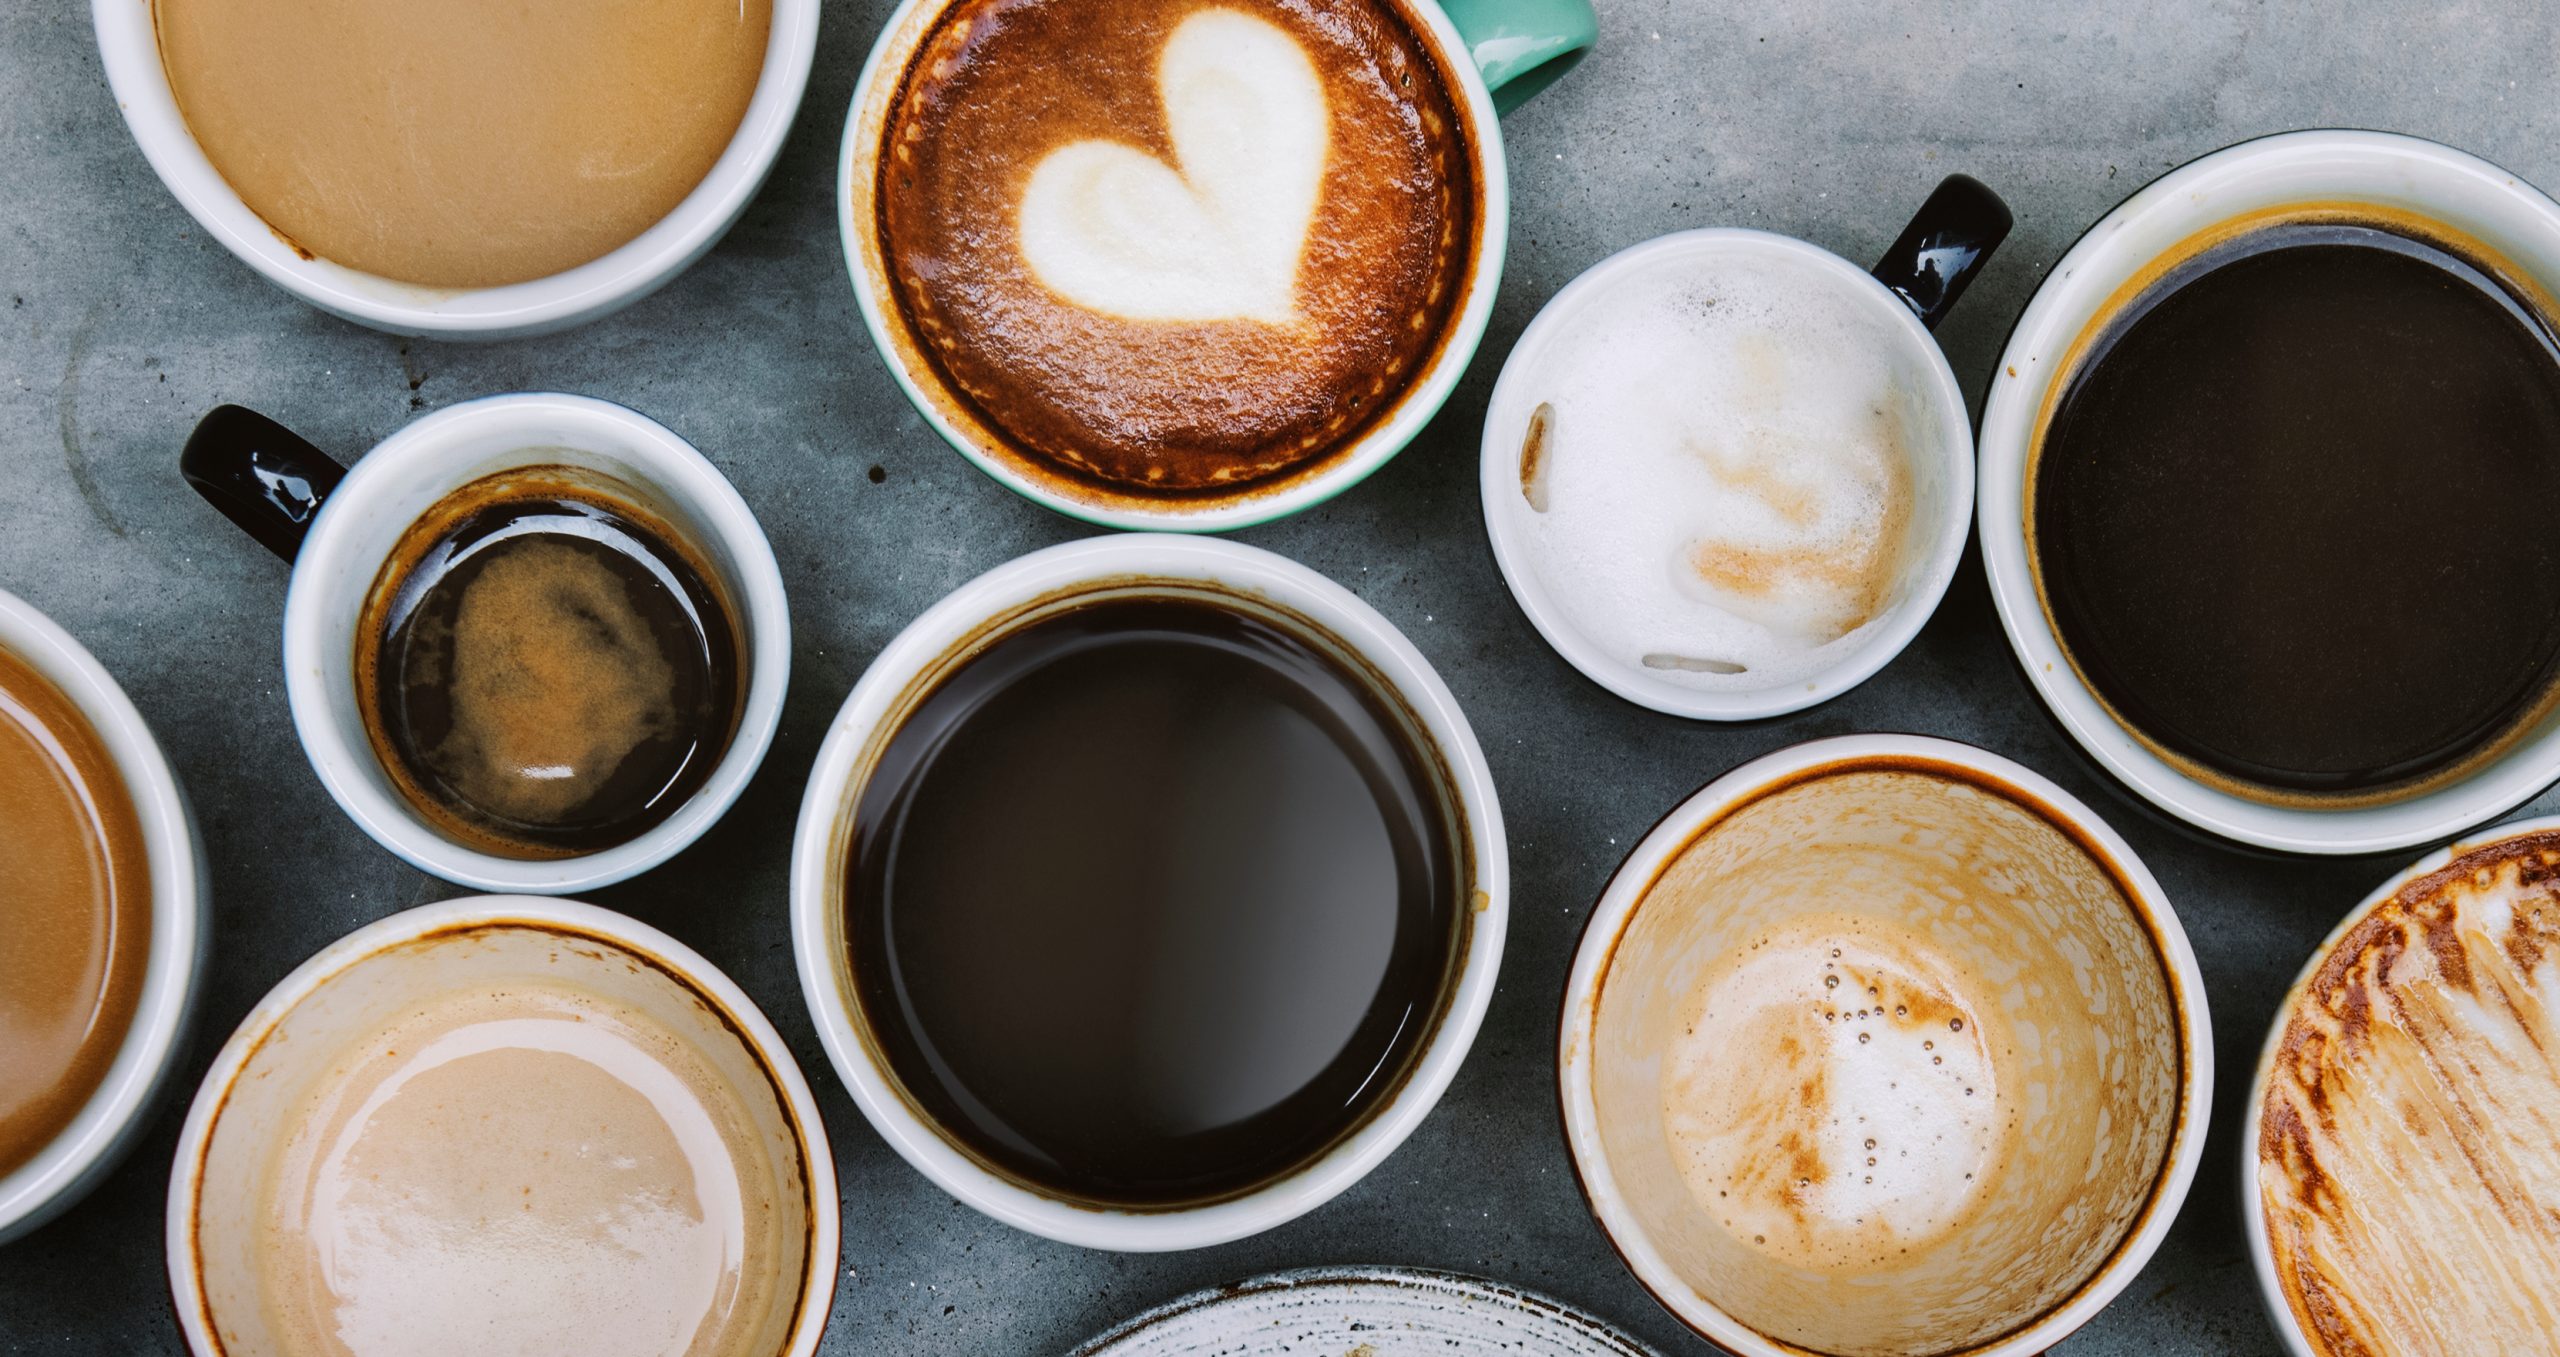 Cafeaua băută în pahar de plastic crește riscul de CANCER